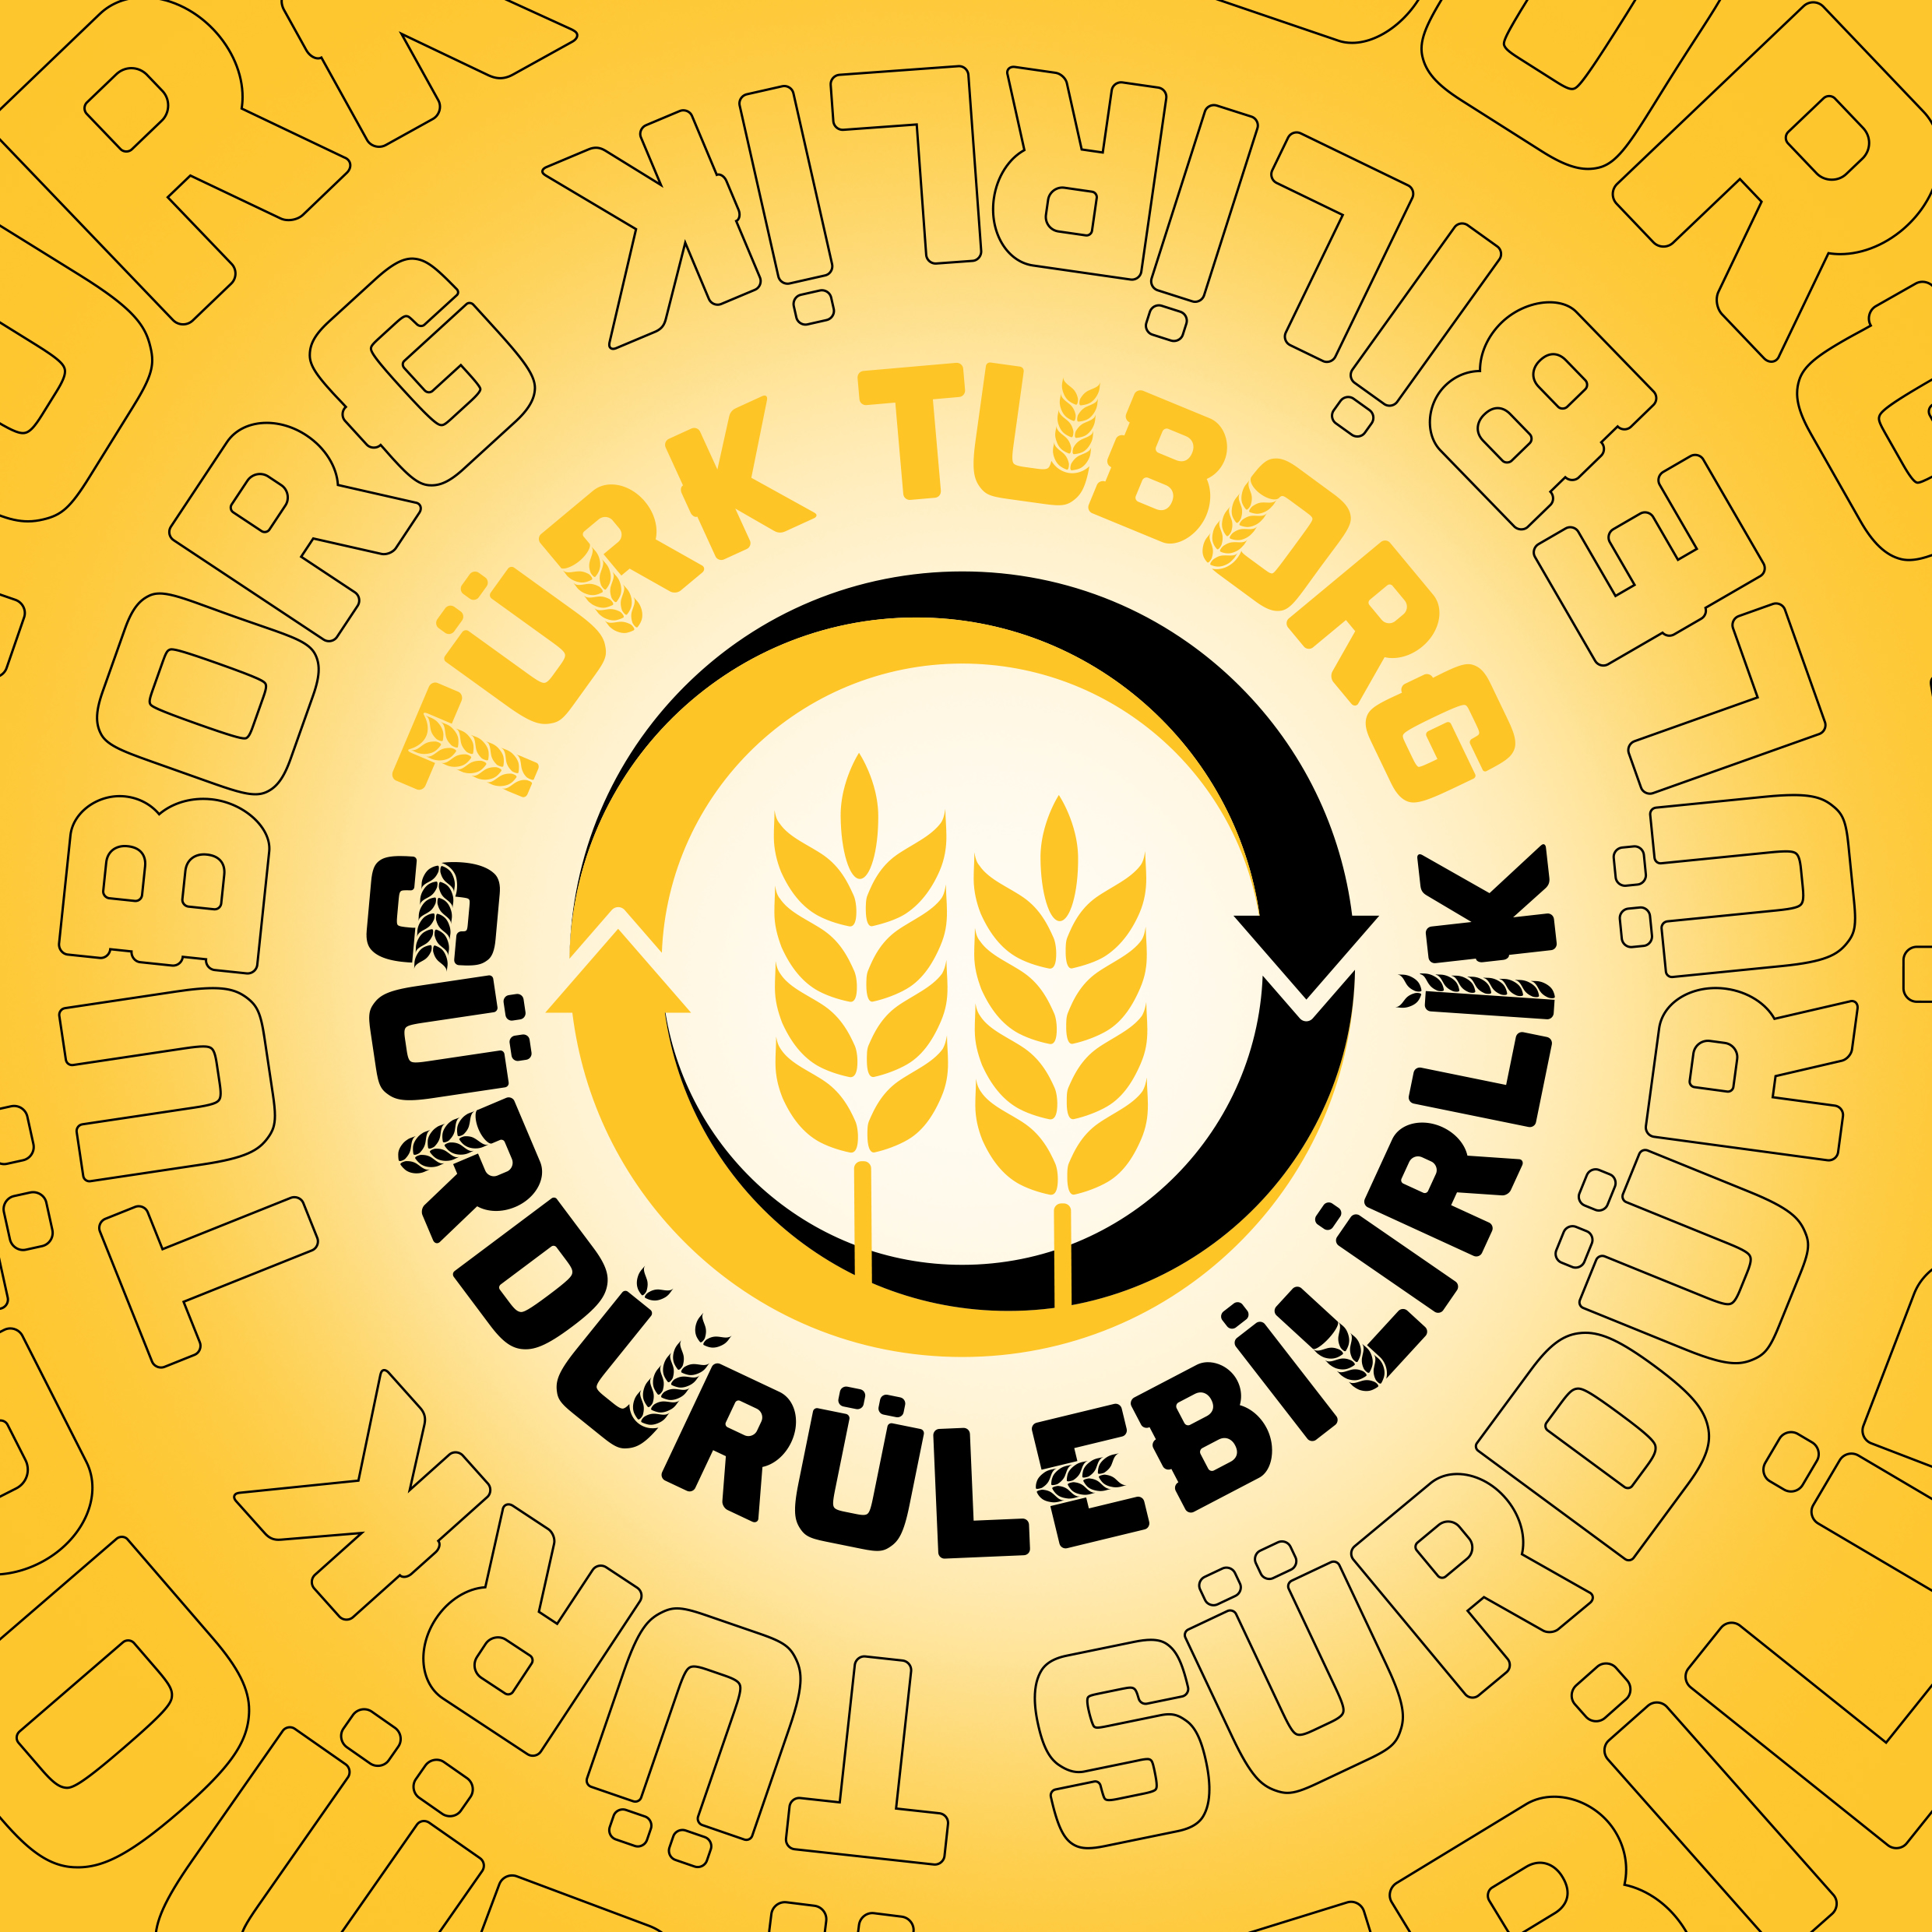 Türk-Tuborg-Surdurulebilirlik-03[KAPAK]